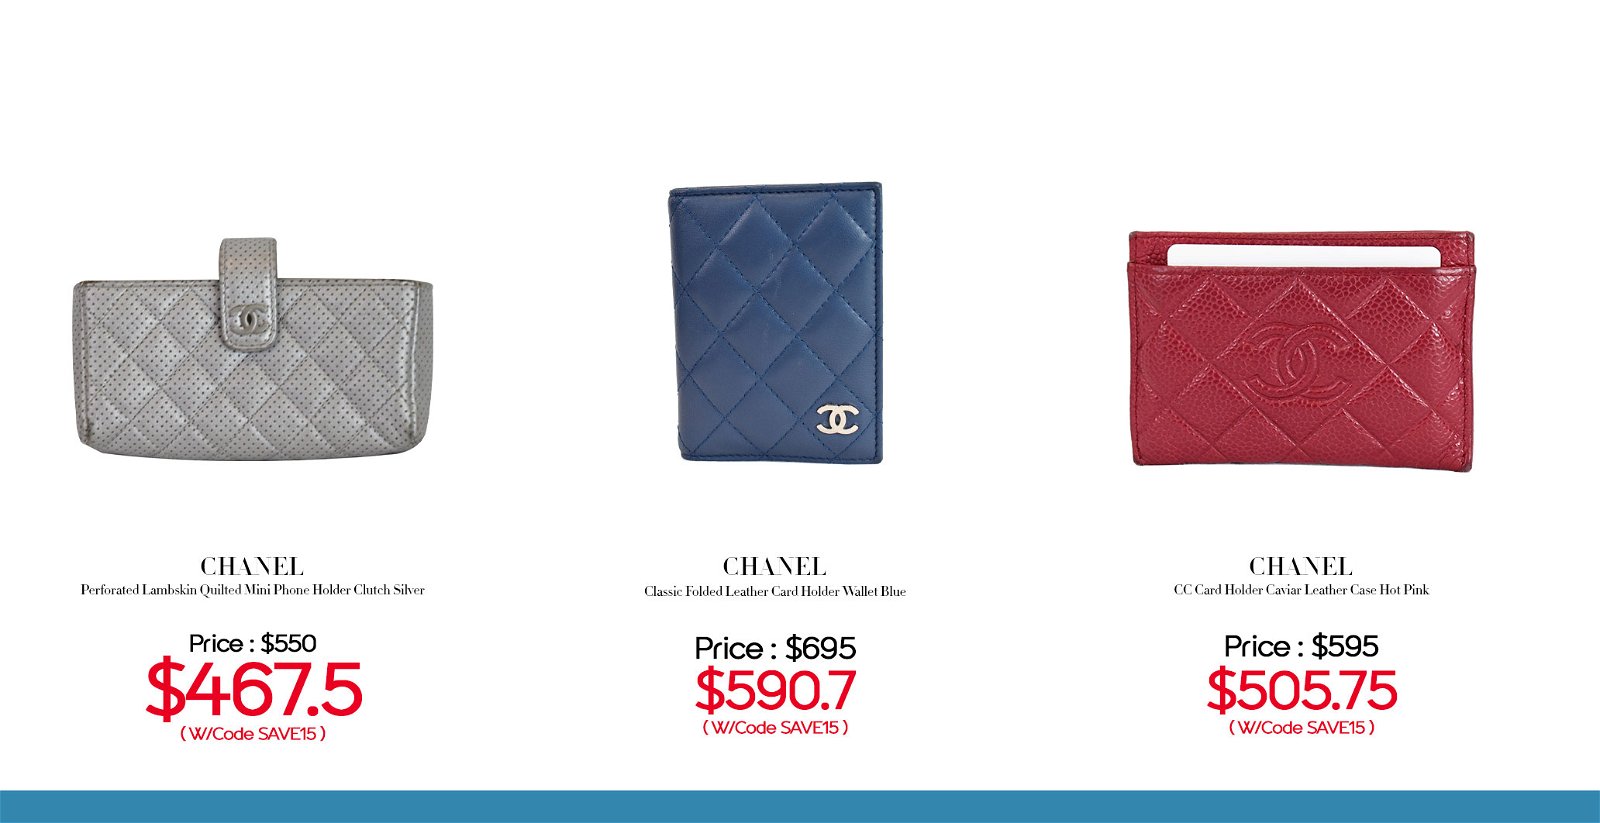 Dallas Designer Handbags: CHANEL Love!